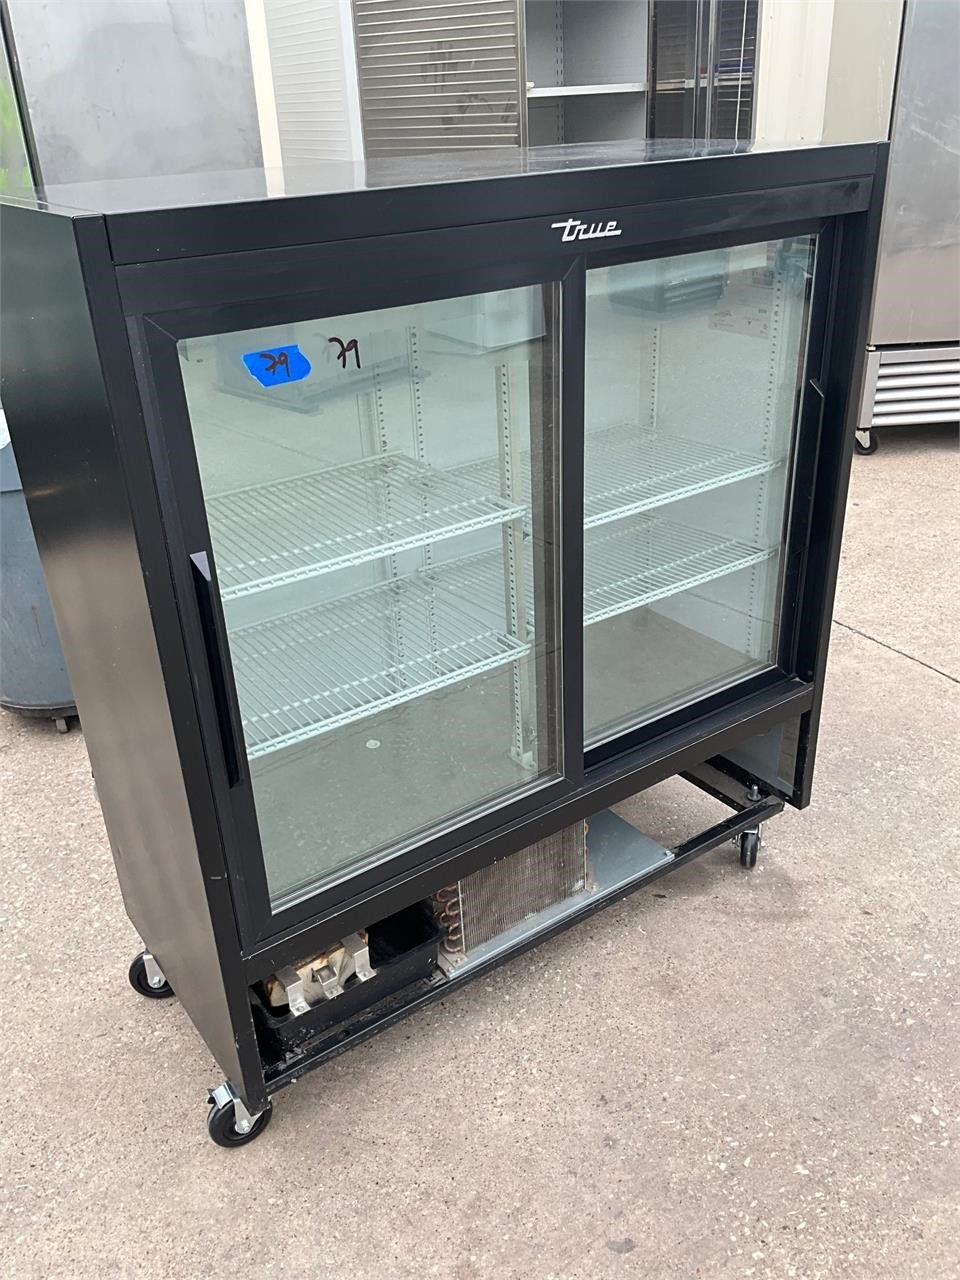 True GDM-41 commercial refrigerator